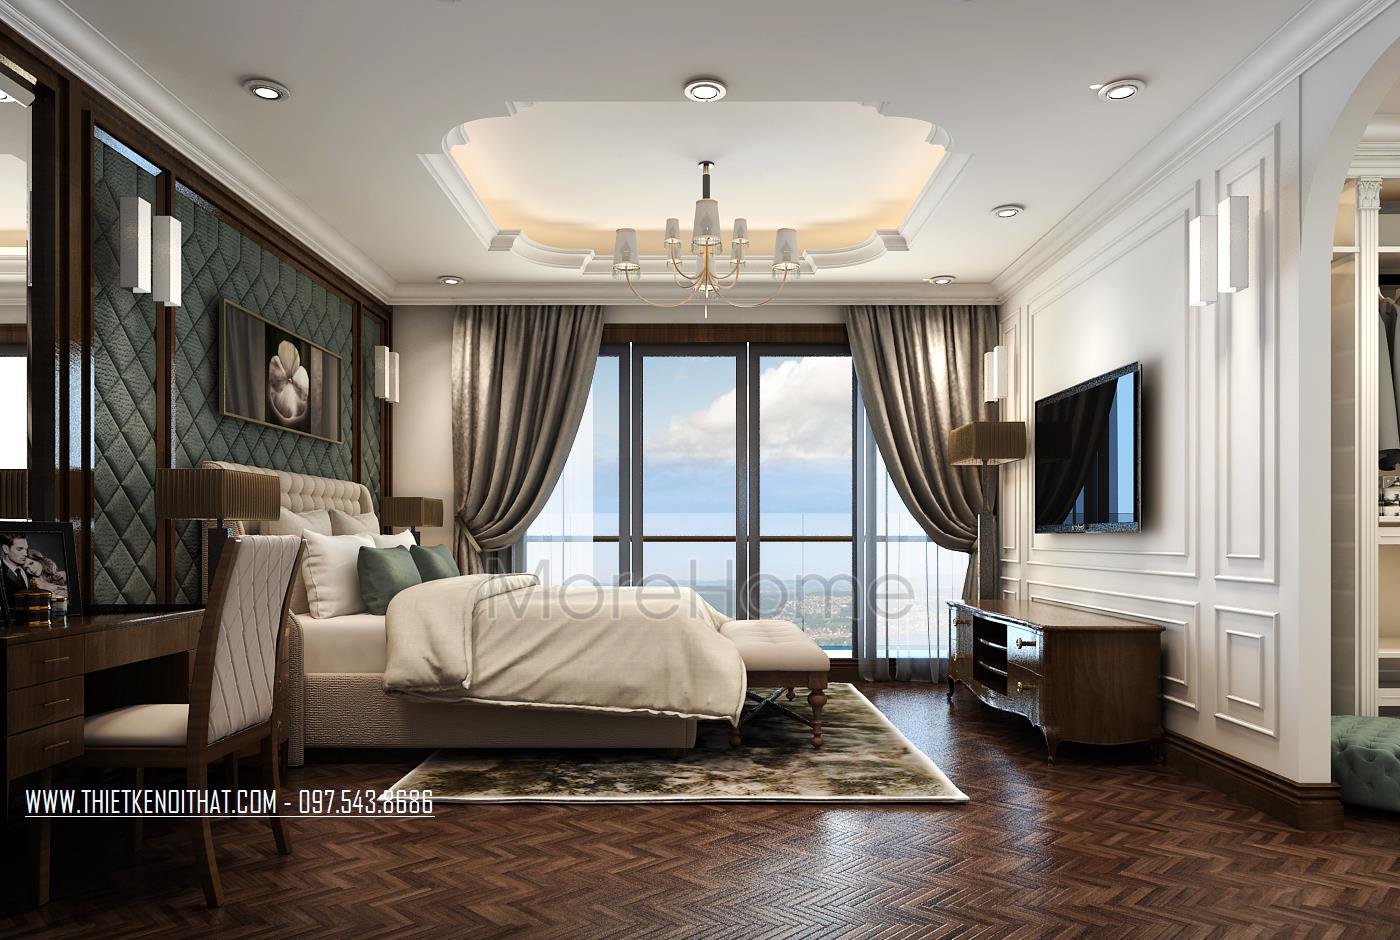 Thiết kế nội thất khách sạn 5 sao tân cổ điển tại Hà Nội sẽ cho bạn một trải nghiệm hoàn toàn mới về phong cách sống cổ điển và sang trọng. Những hình ảnh về những thiết kế nội thất phòng ngủ đẹp nhất đang chờ đón bạn!